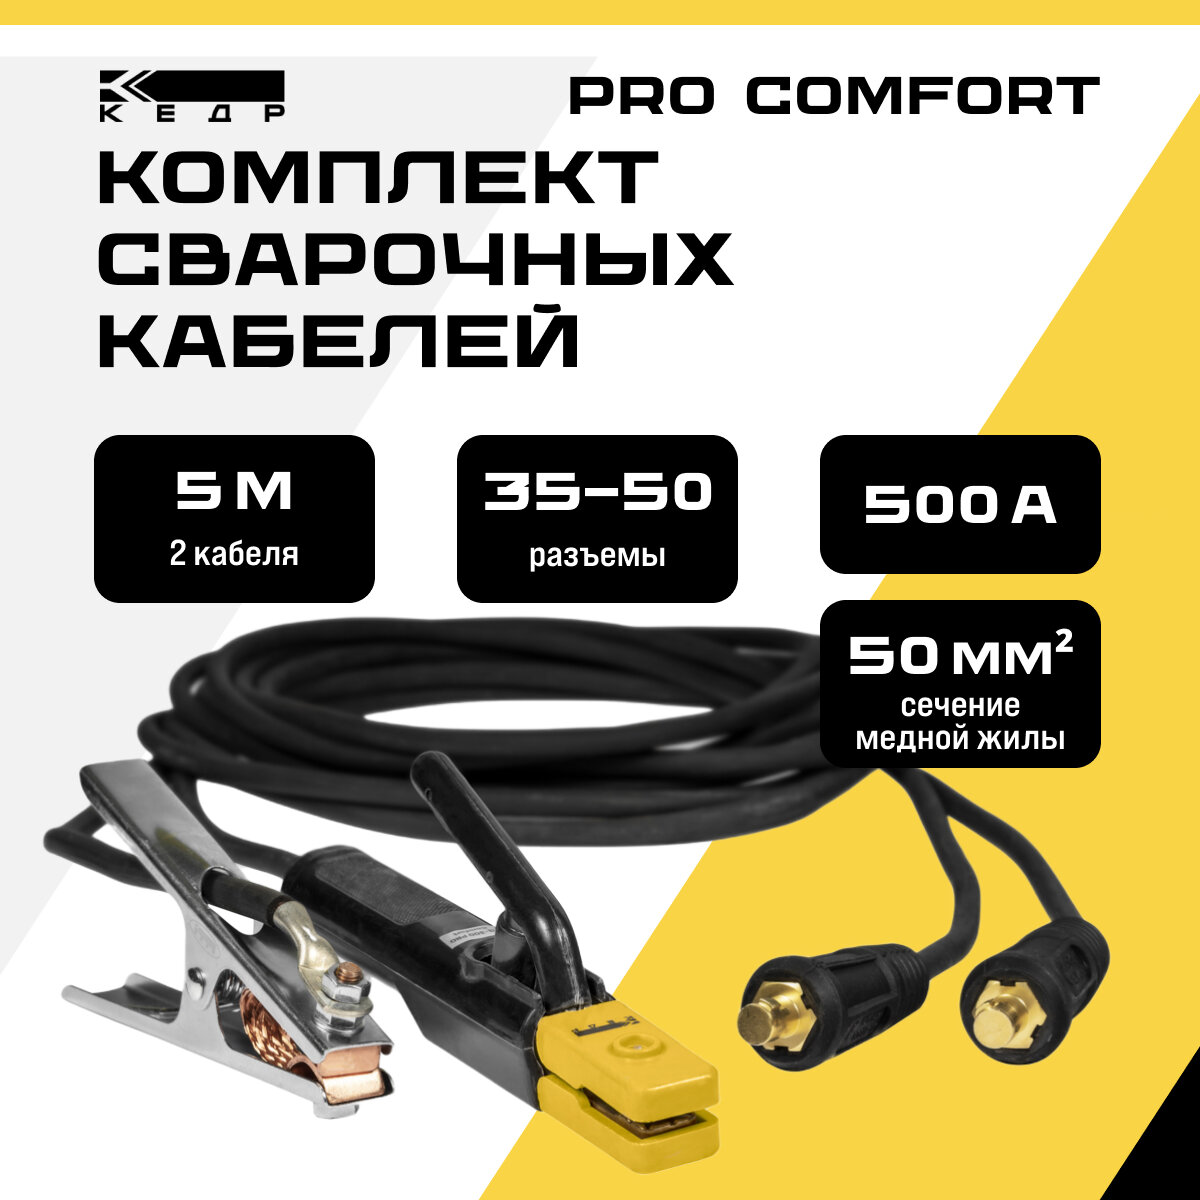 Комплект сварочных кабелей 5м 500A электрододержатель и клемма заземления кедр 35-50/1*50 PRO Comfort 8004841